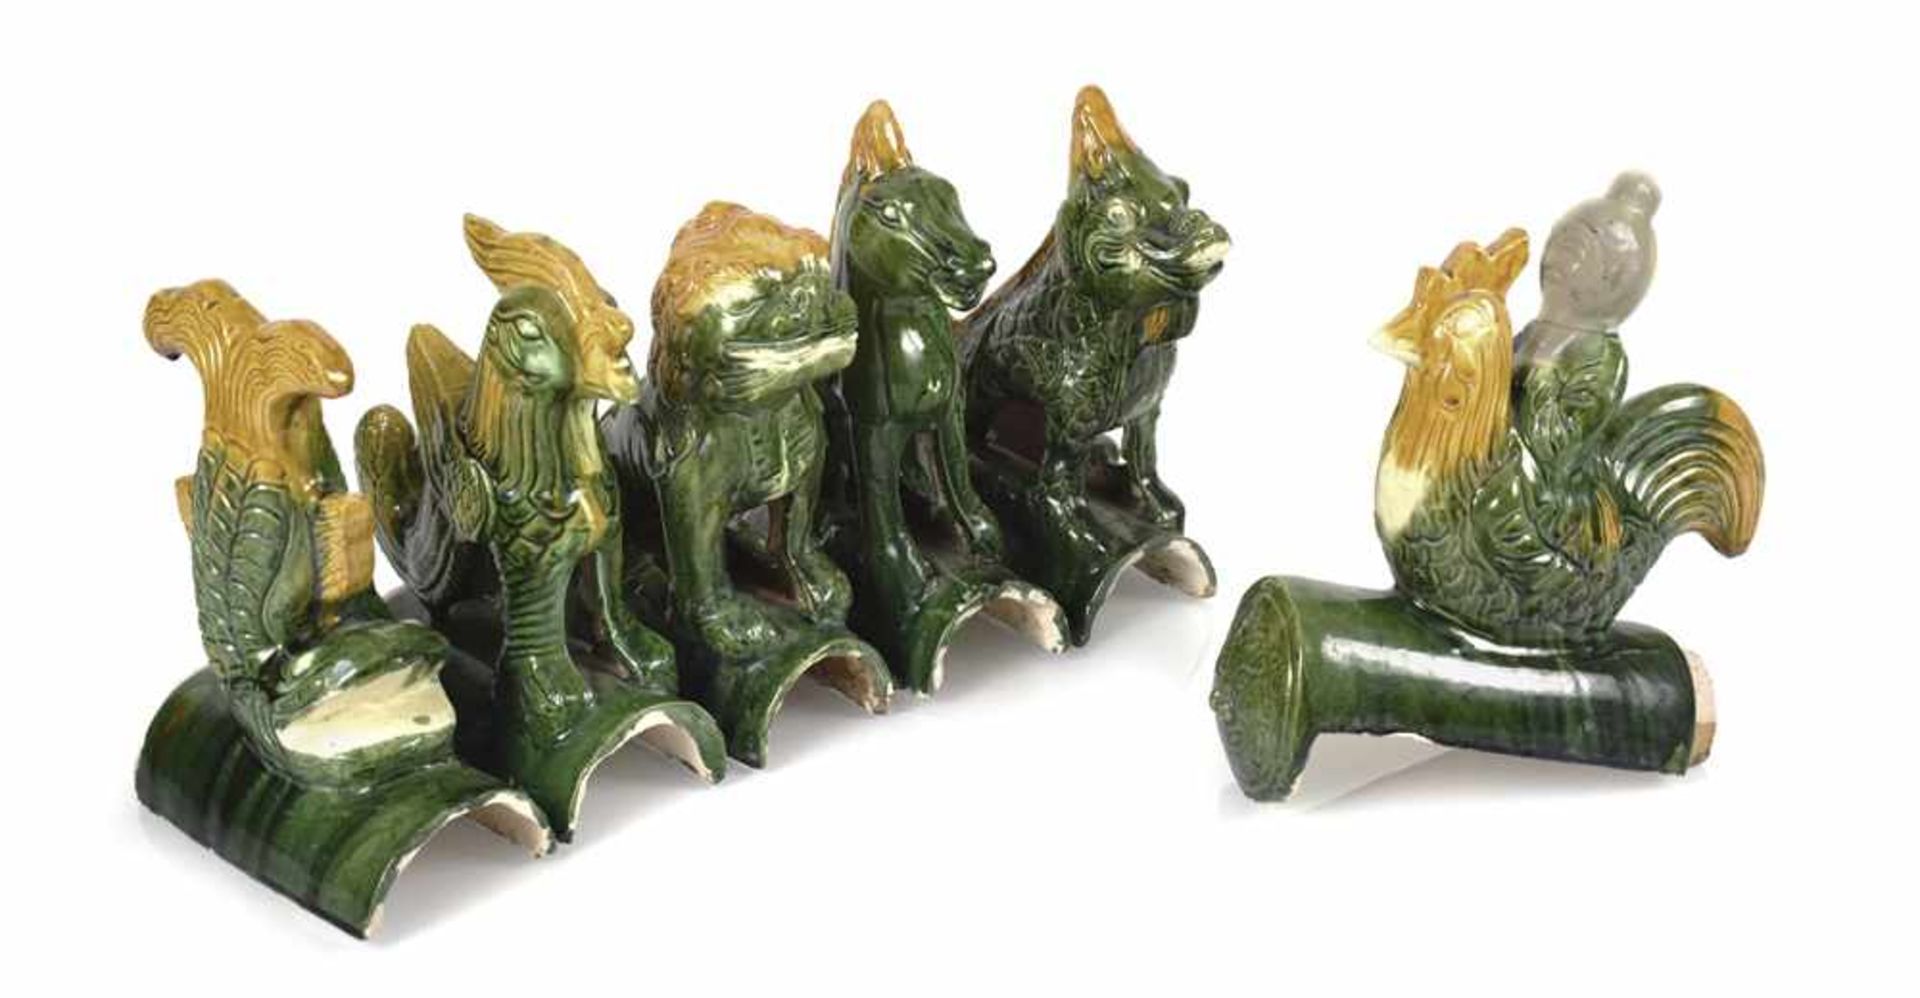 Sechs Dachreiter in Form von Tieren und mythologischen Kreaturen, mit 'sancai'-Glasur